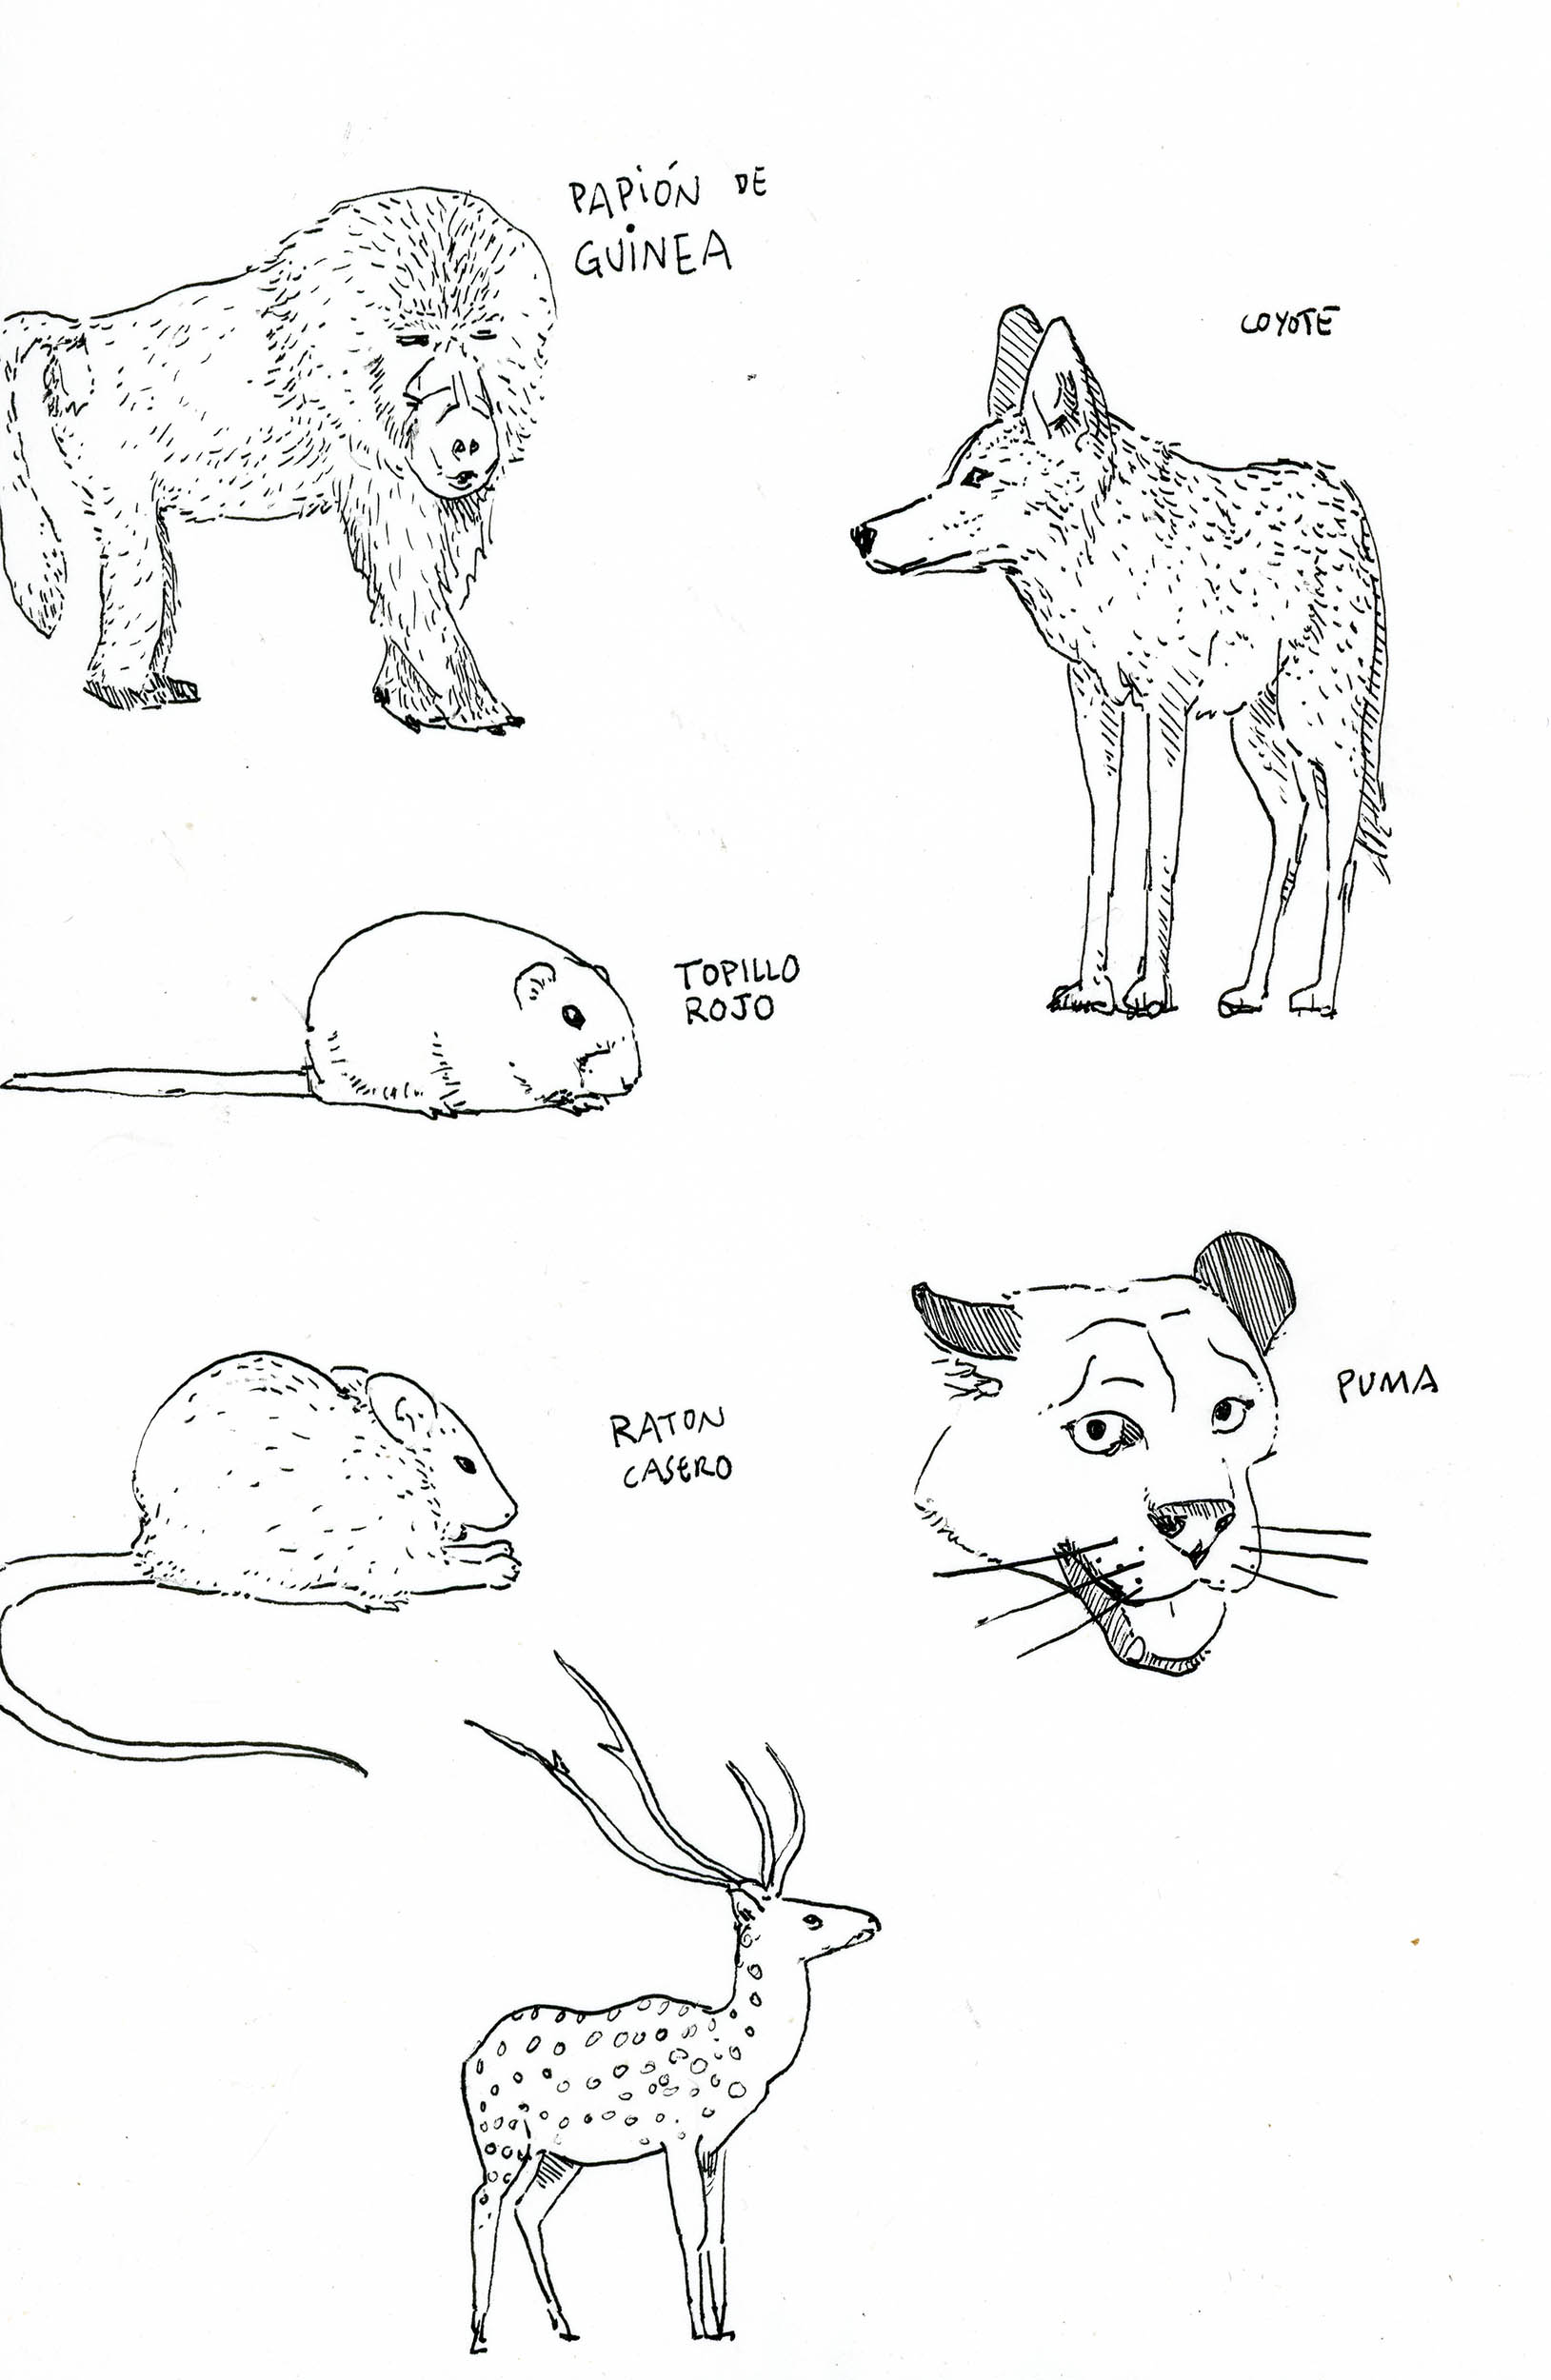 boceto papion, raton, topillo, coyote y ciervo